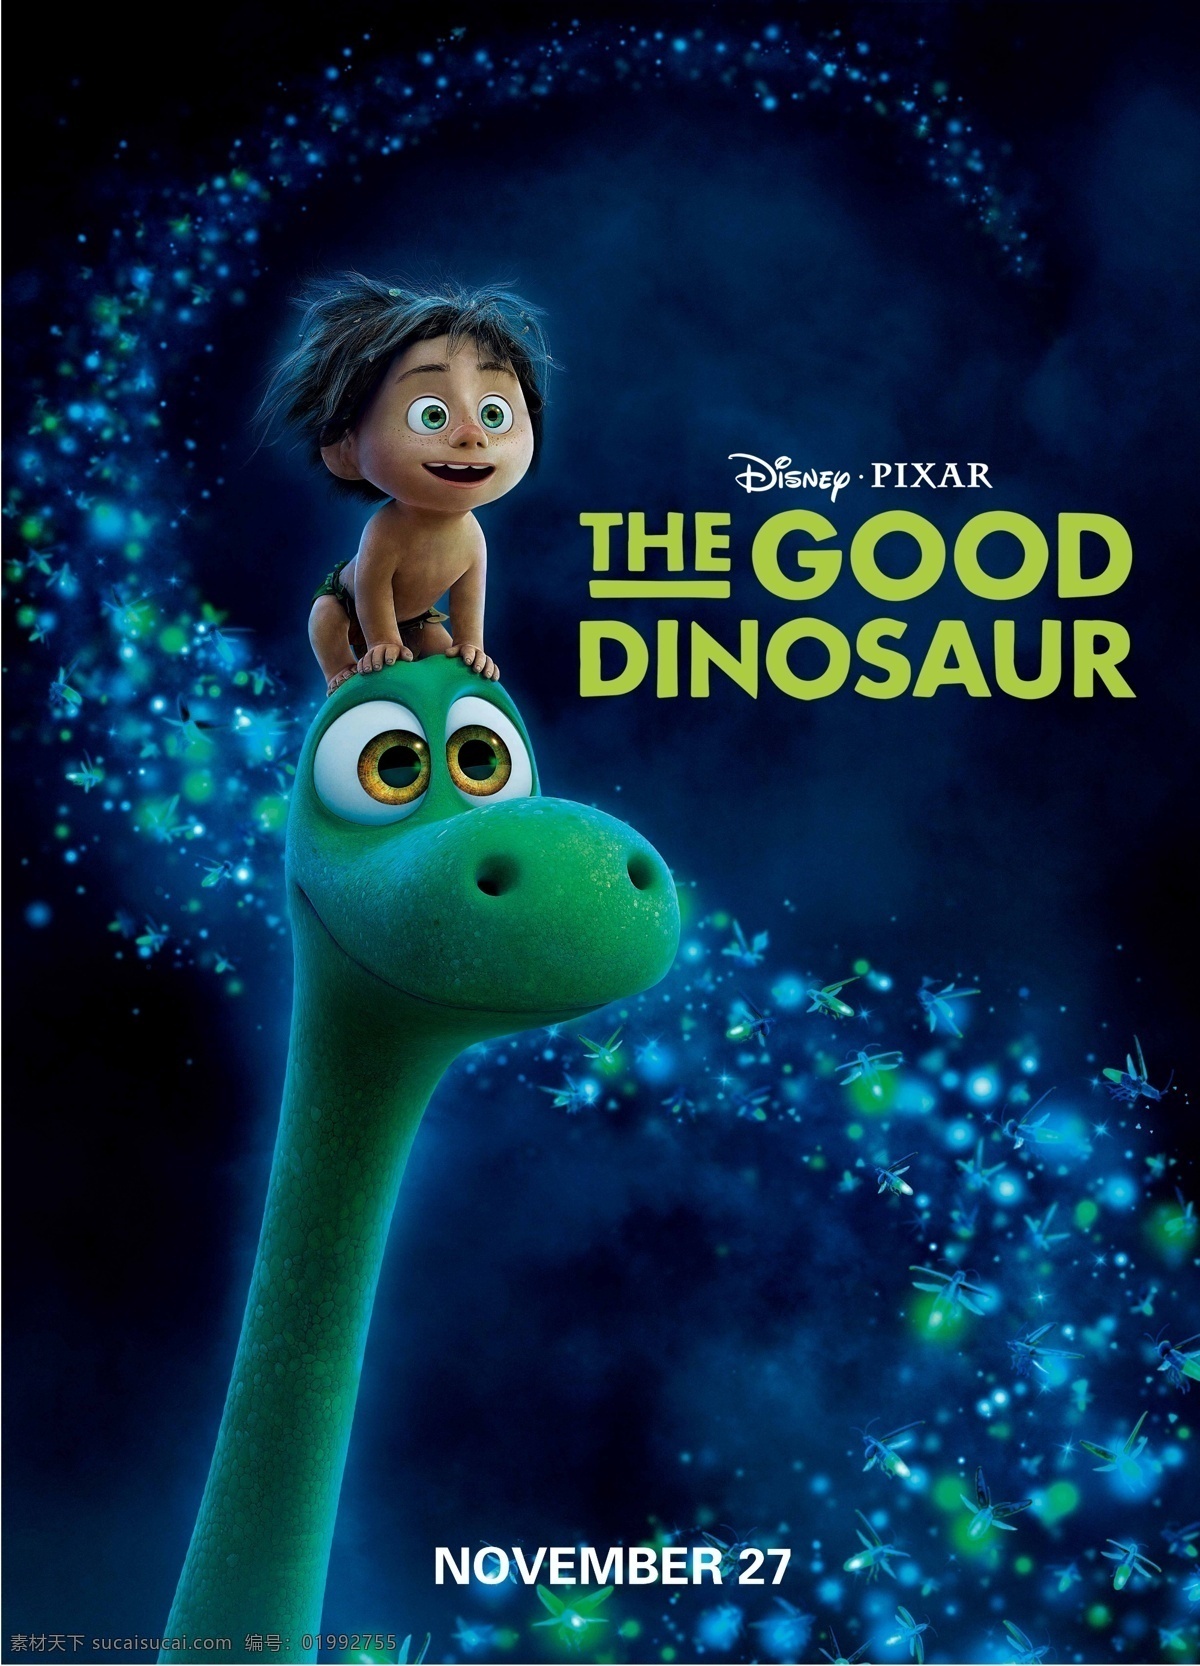 恐龙当家 恐龙与男孩 善良的恐龙 恐龙世界 好恐龙 皮克斯 动画 家庭 喜剧 场景 场景设定 卡通 动画电影 pixar